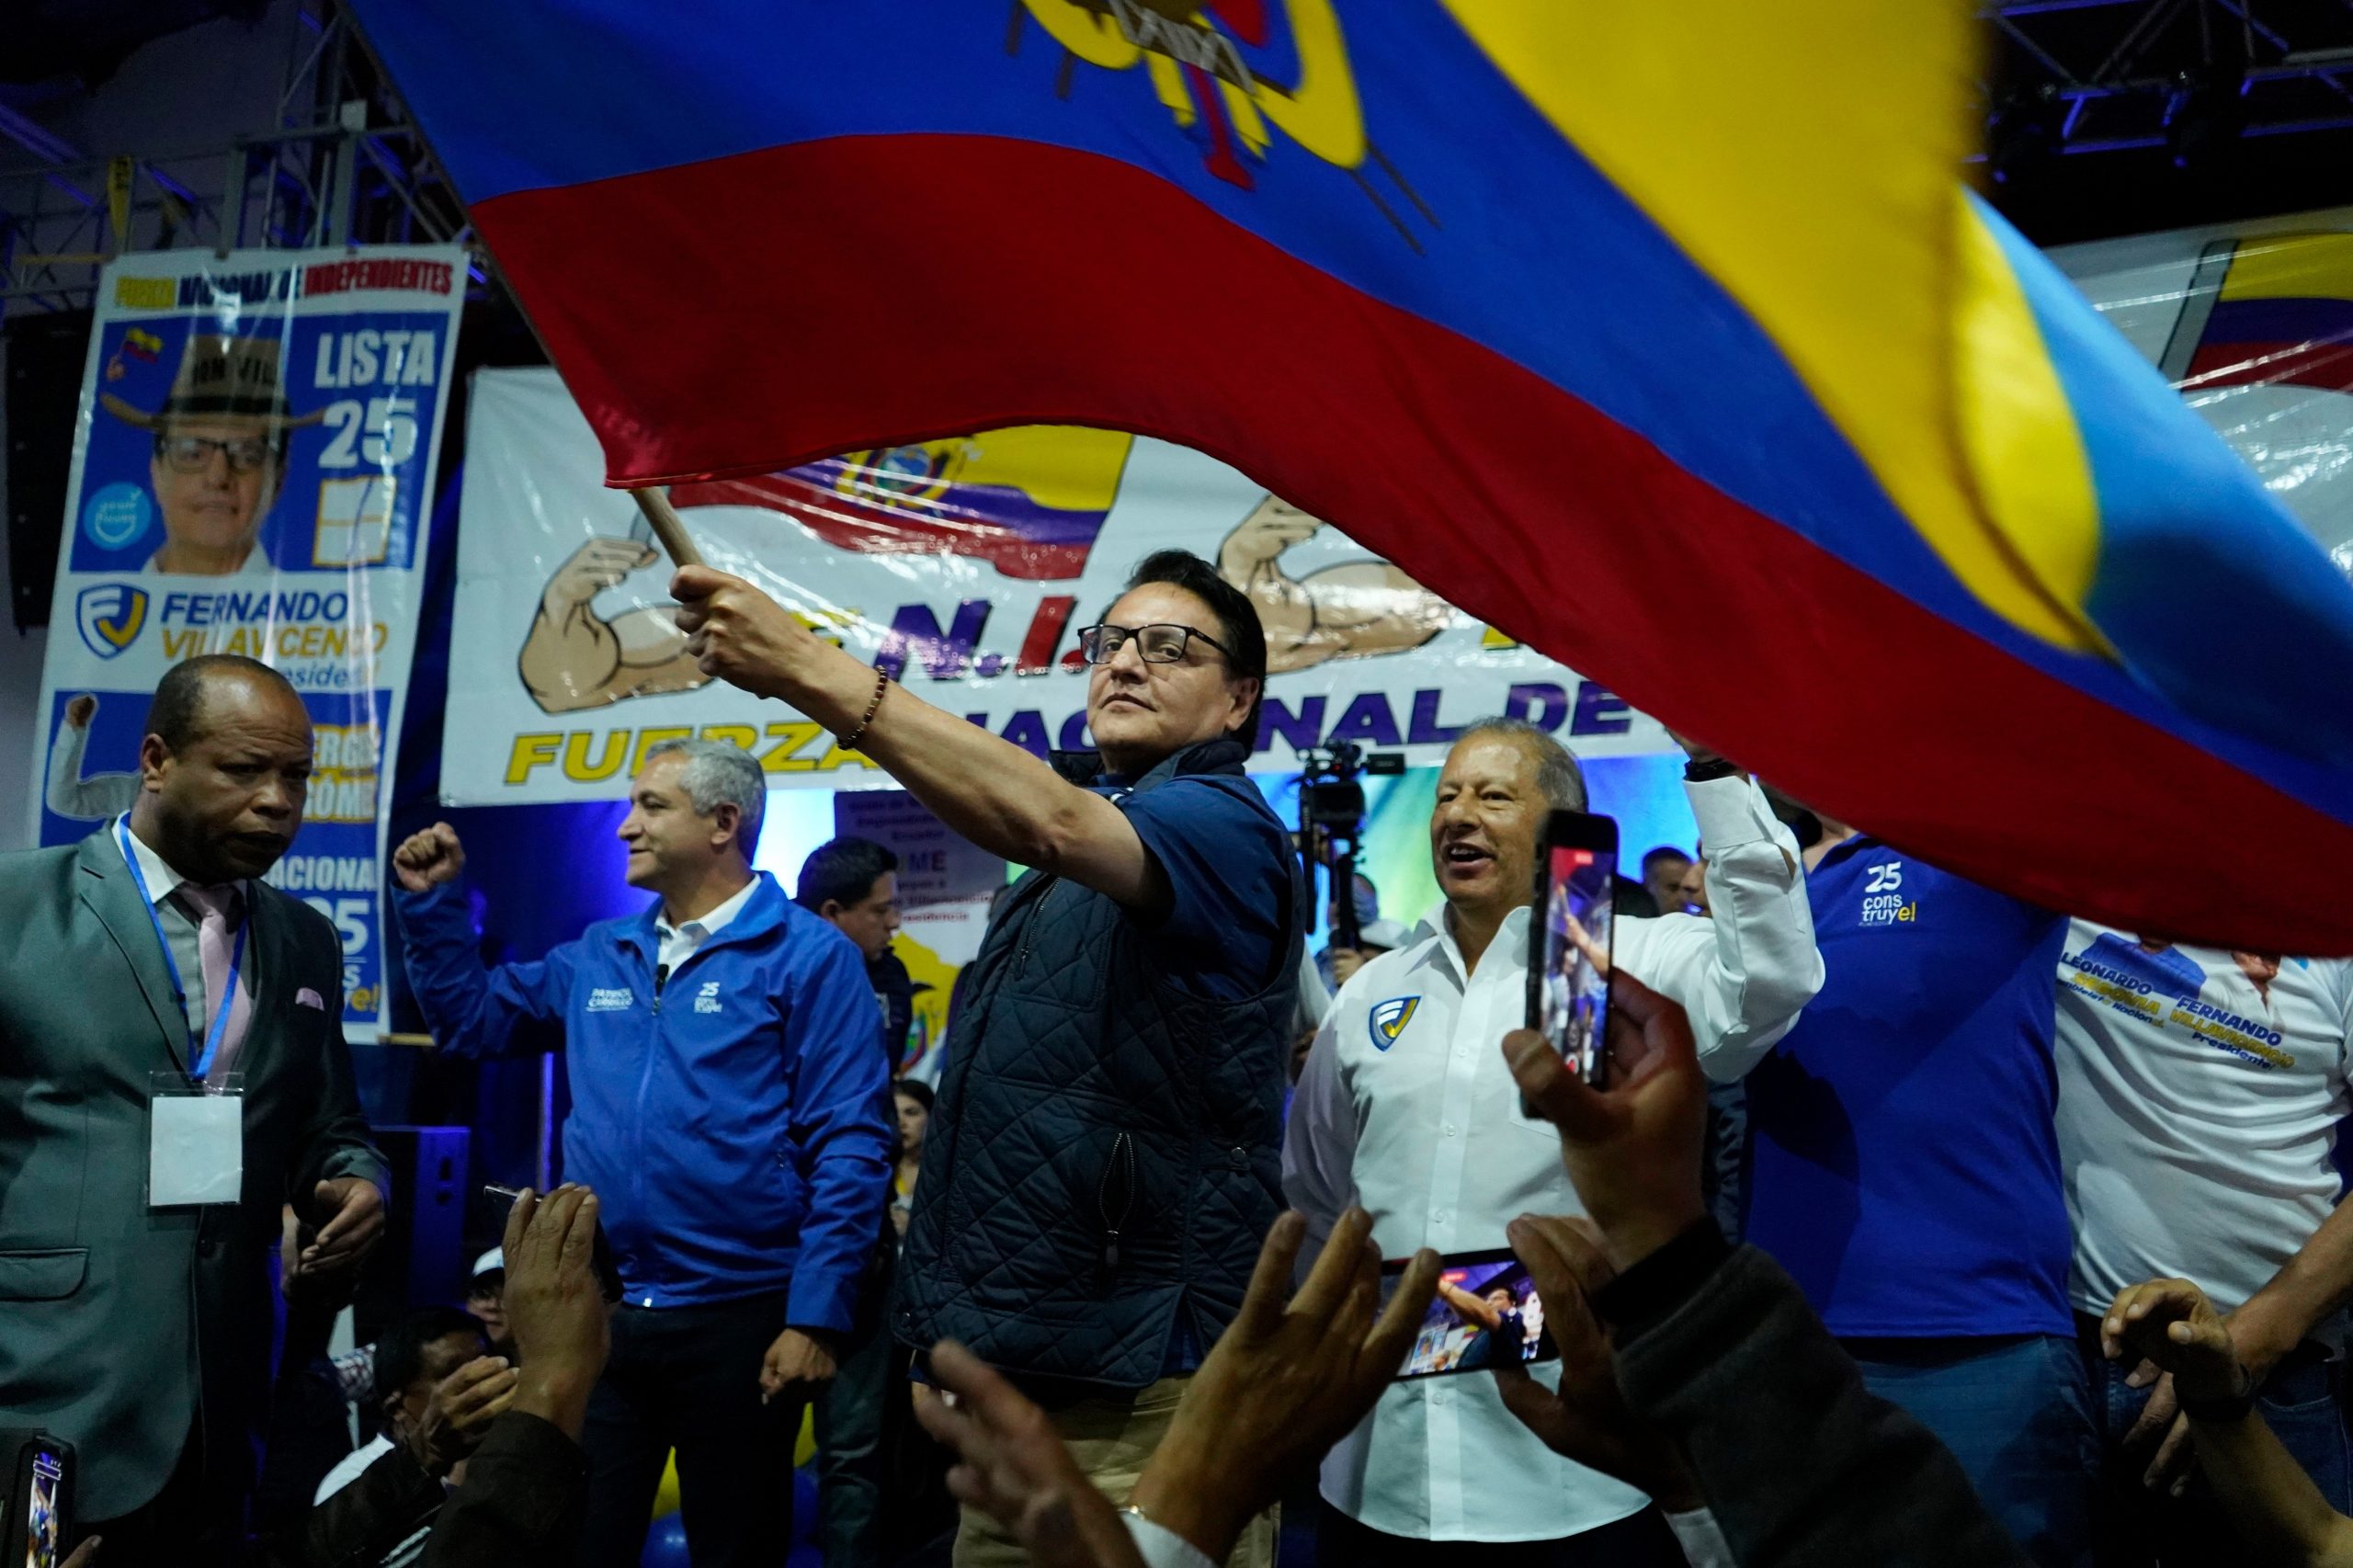 Asesinan a Fernando Villavicencio, candidato presidencial de Ecuador